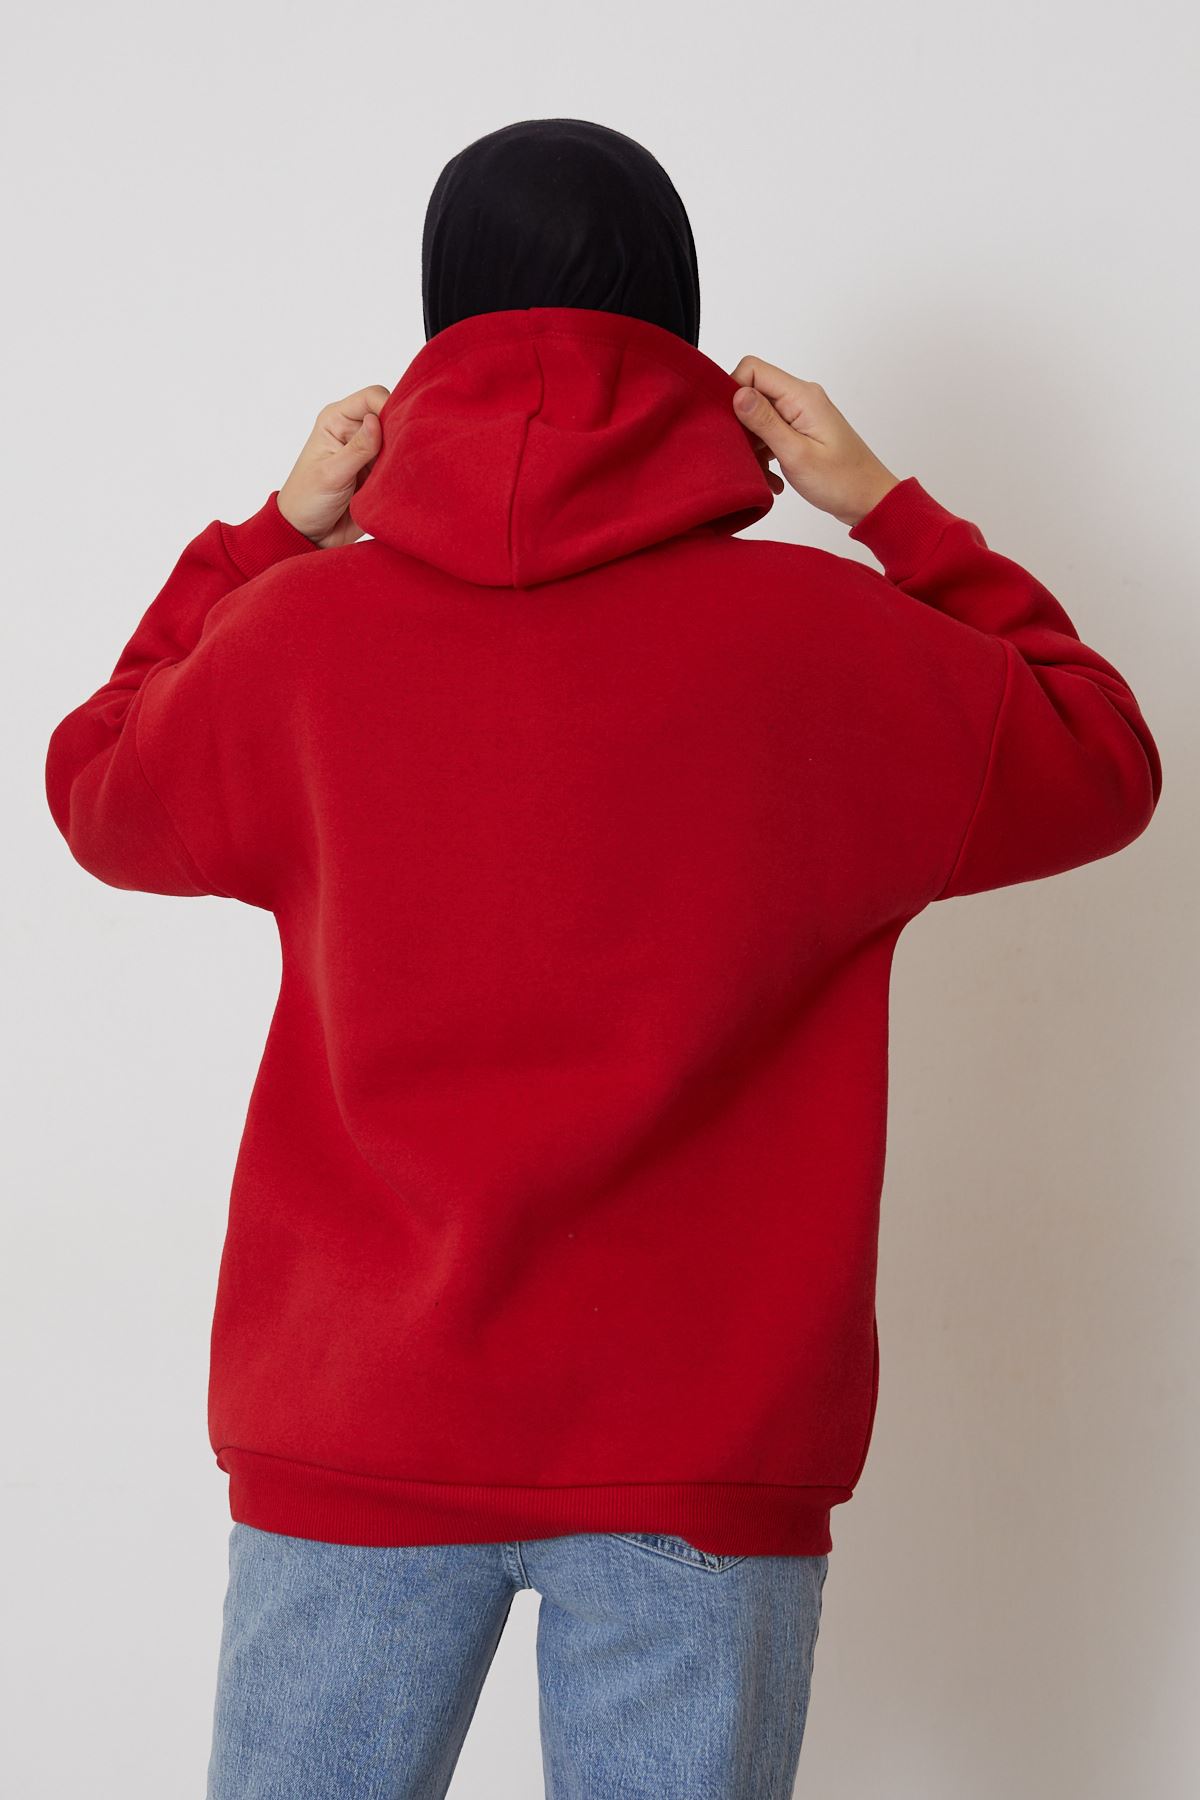 Ön Fermuarlı Kapşonlu Sweatshirt Hırka-Kırmızı